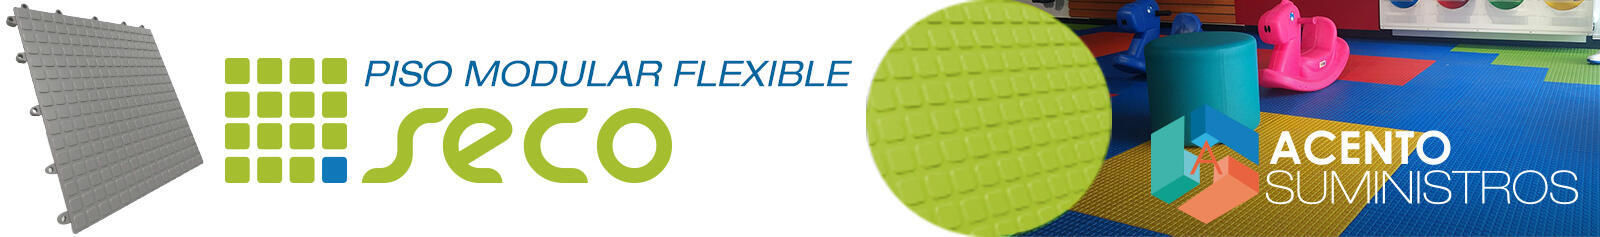 Piso comerciales de colores modular Flexible SECO Acento Suministros